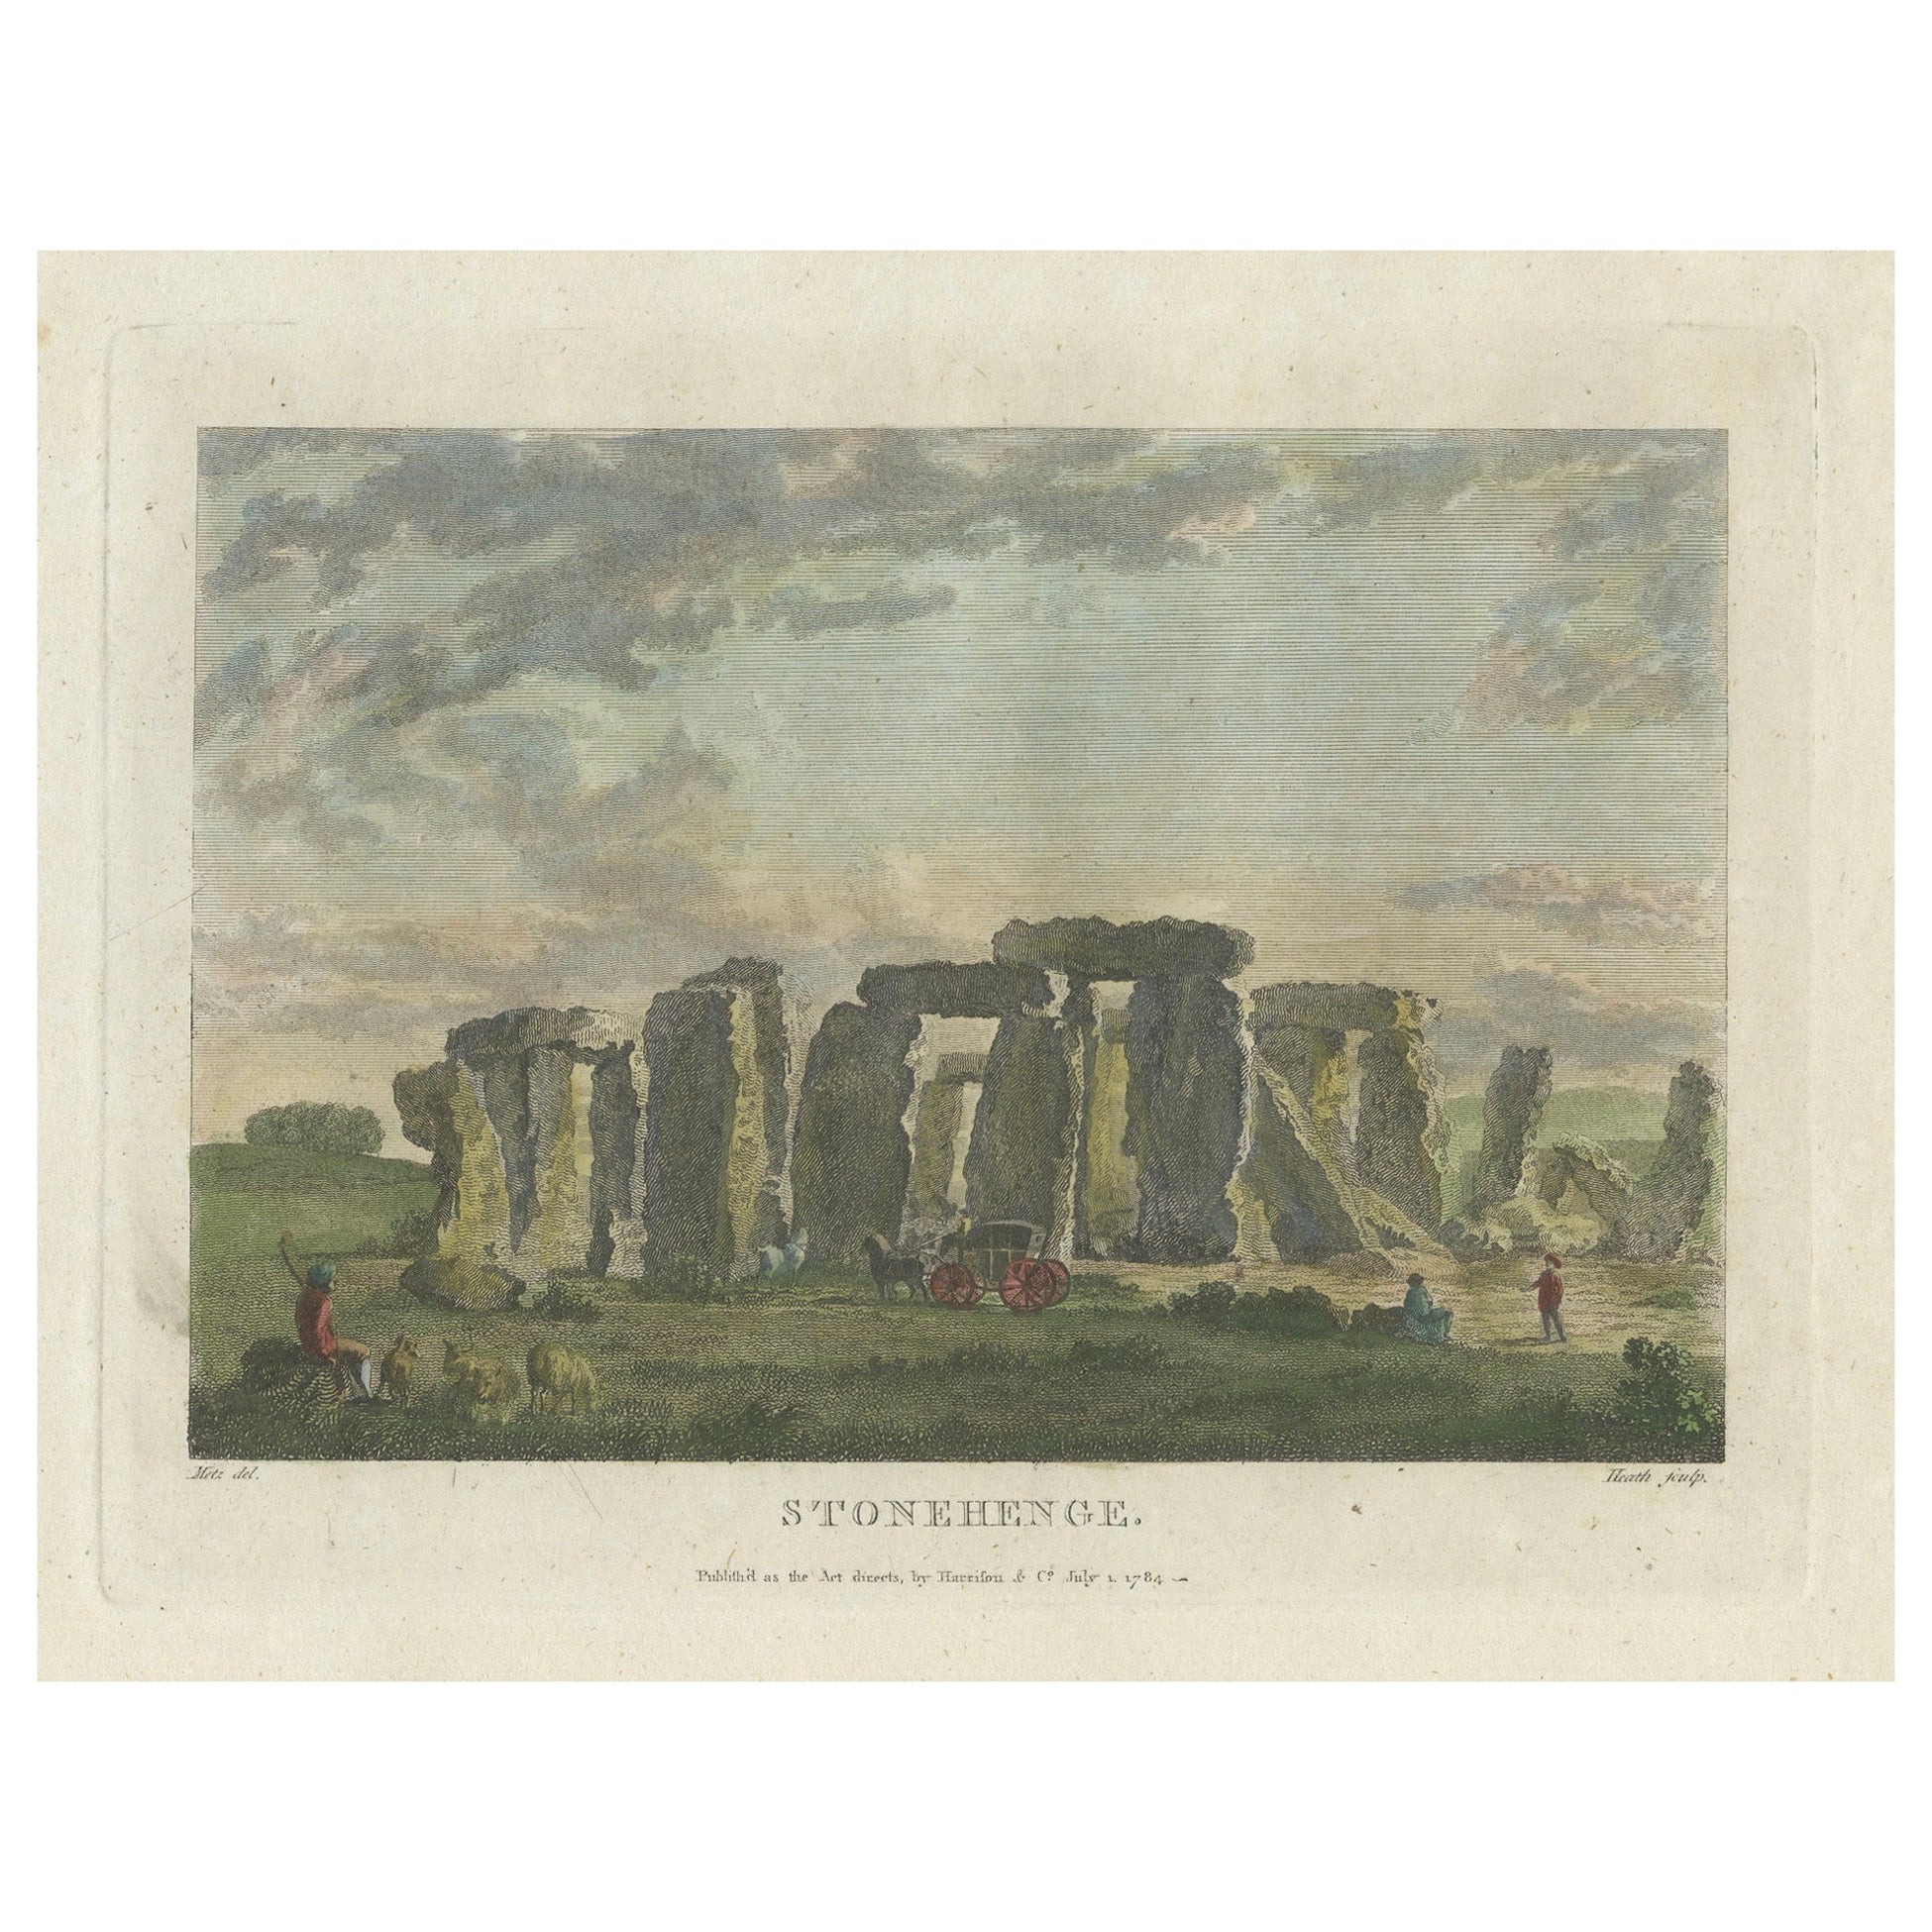 Handkolorierter Kupferstich von Stonehenge: Pastorale Szene mit Figuren und Coach, 1784